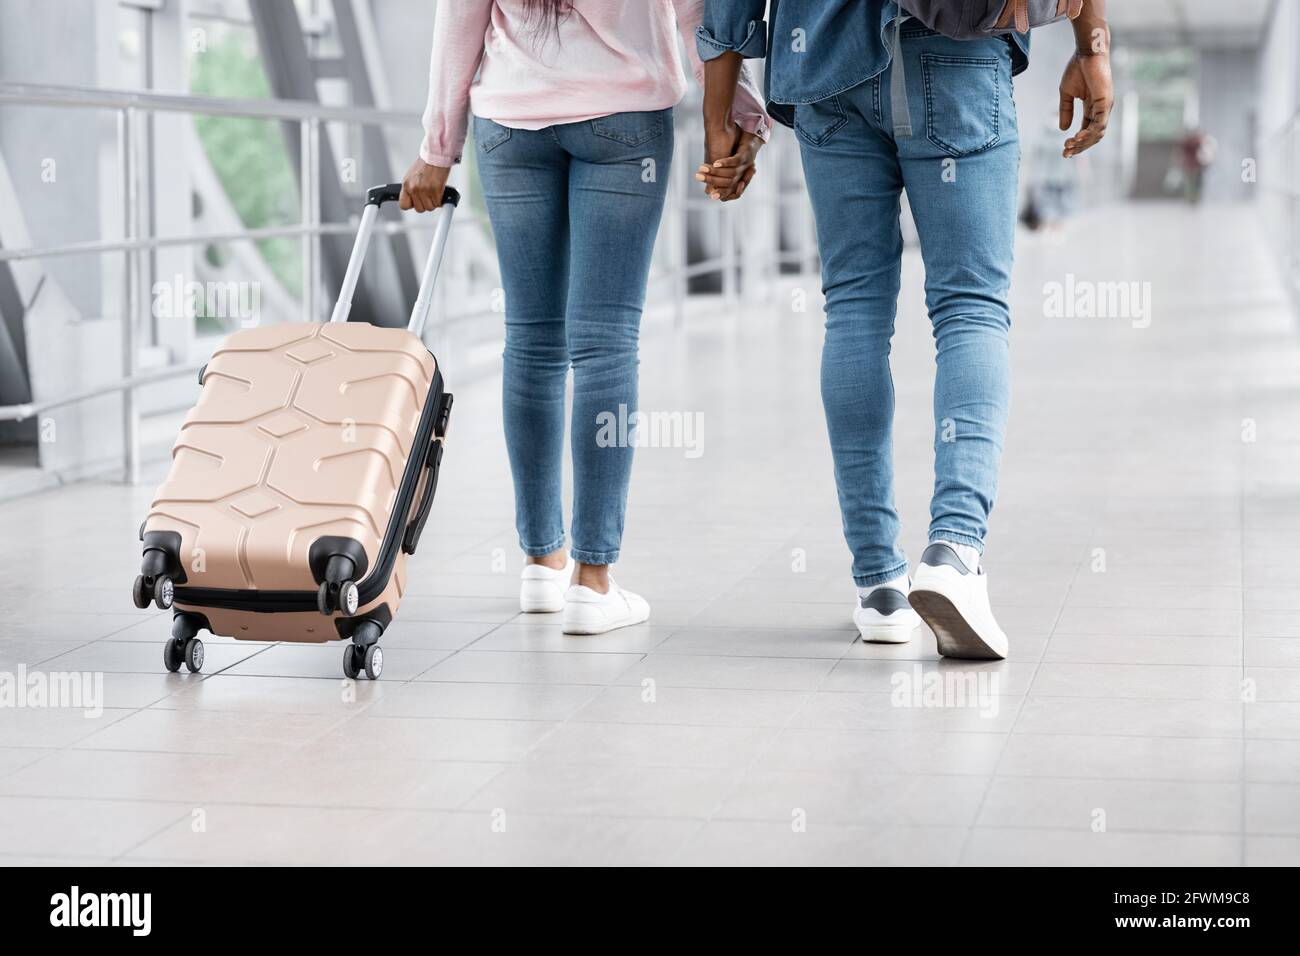 Trasporto aereo. Immagine ritagliata della coppia nera camminando con i bagagli in aeroporto Foto Stock